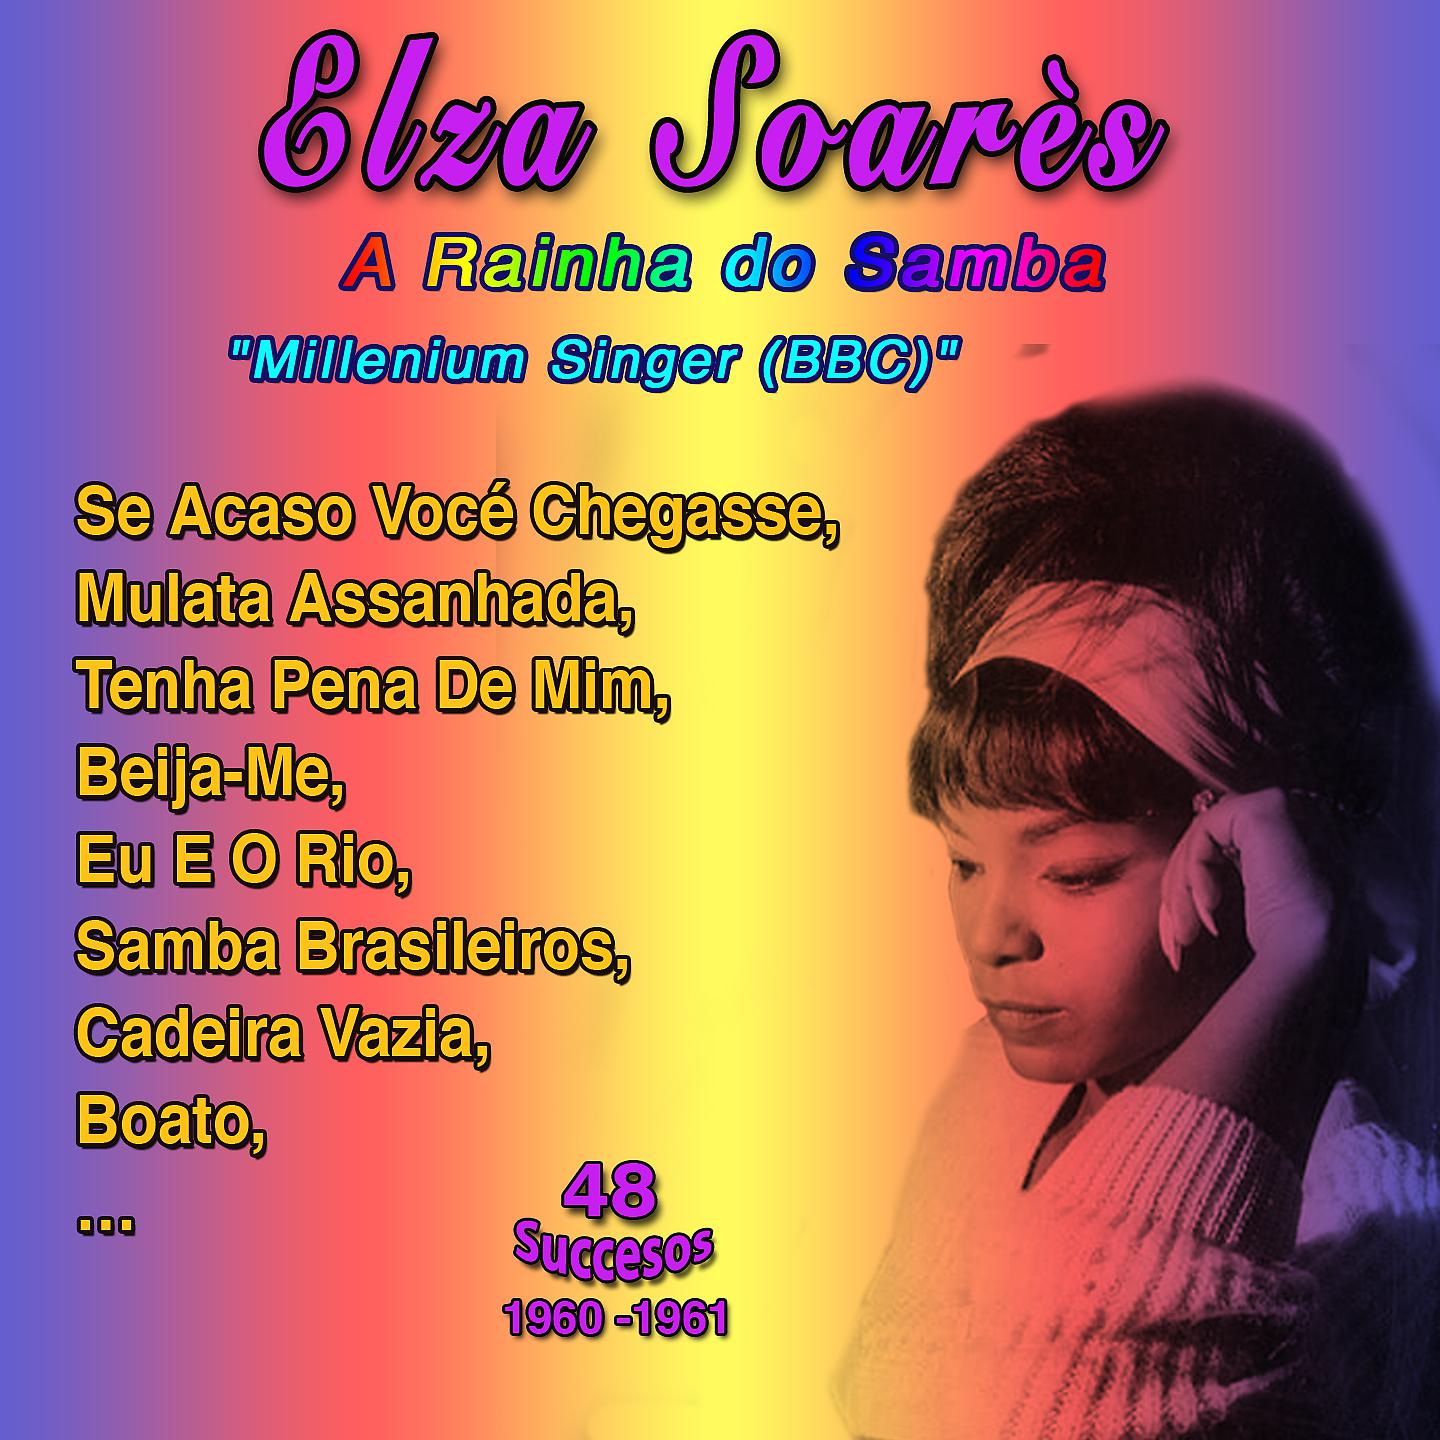 Постер альбома "Queen of Samba - Singer of the Millennium (BBC)" - Elza Soares: Se Acaso Você Chegasse